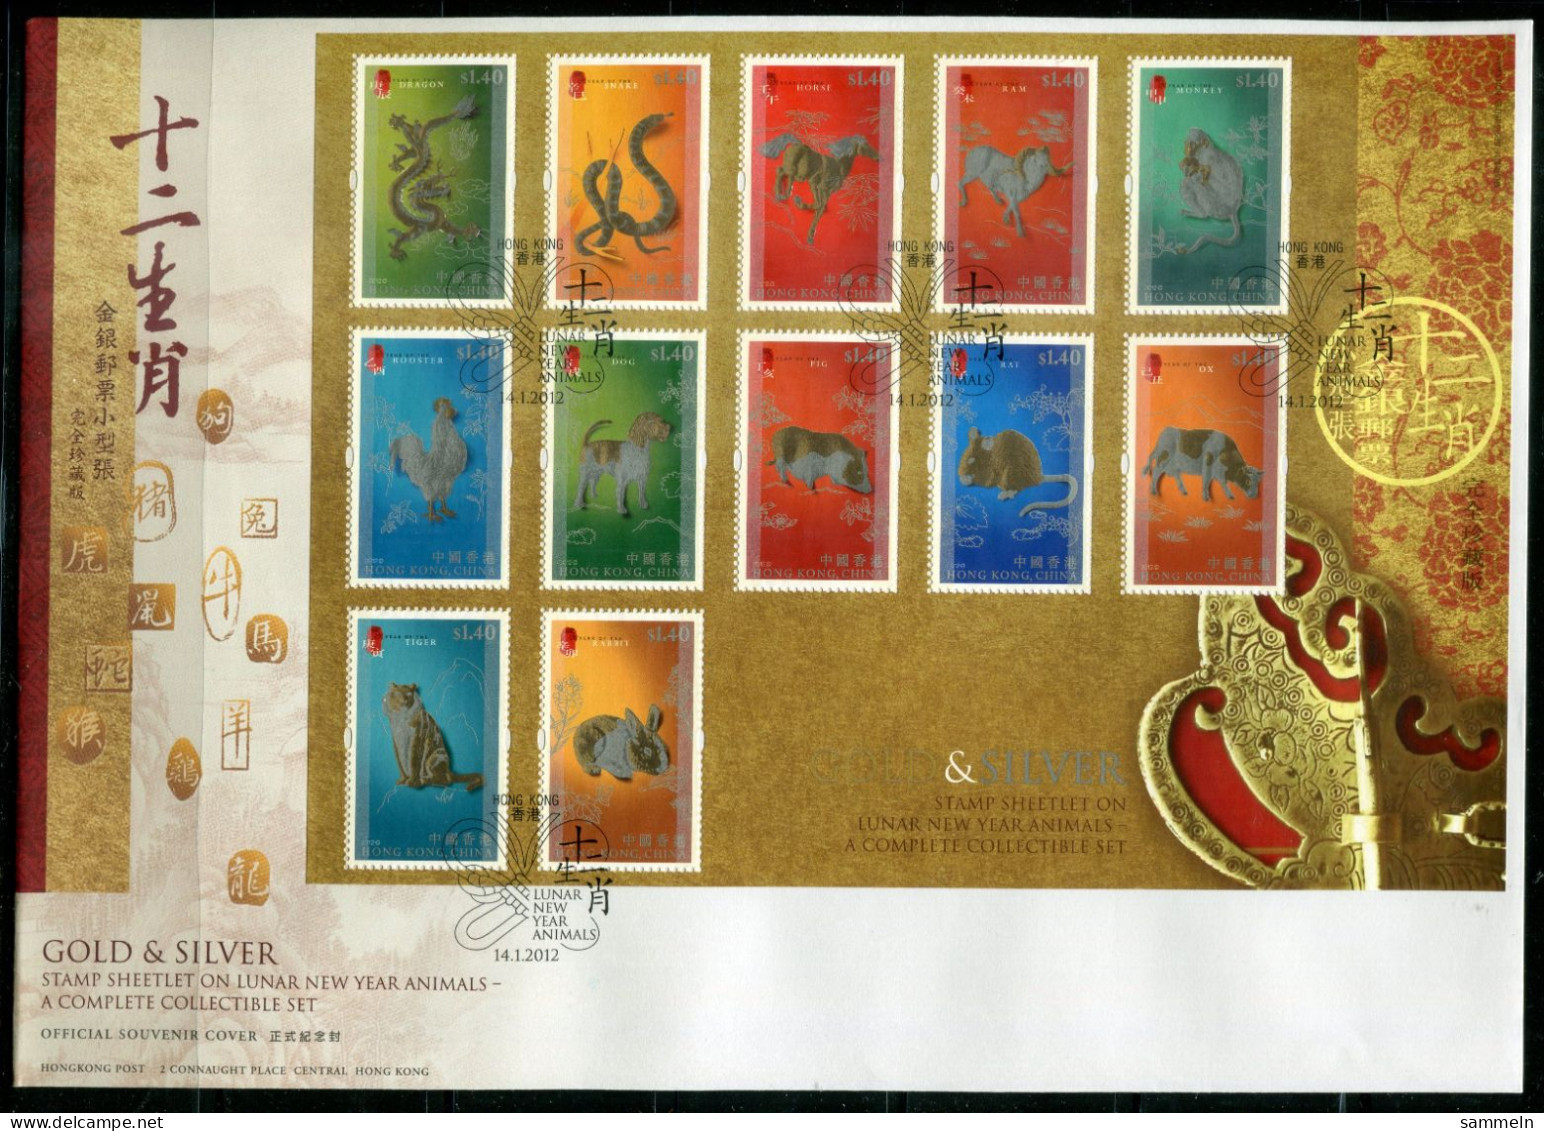 HONGKONG Block 240+241, Bl.240+241 FDC (2) - Chinesische Sternzeichen, Lunar New Year Animals - HONG KONG - Blocks & Kleinbögen